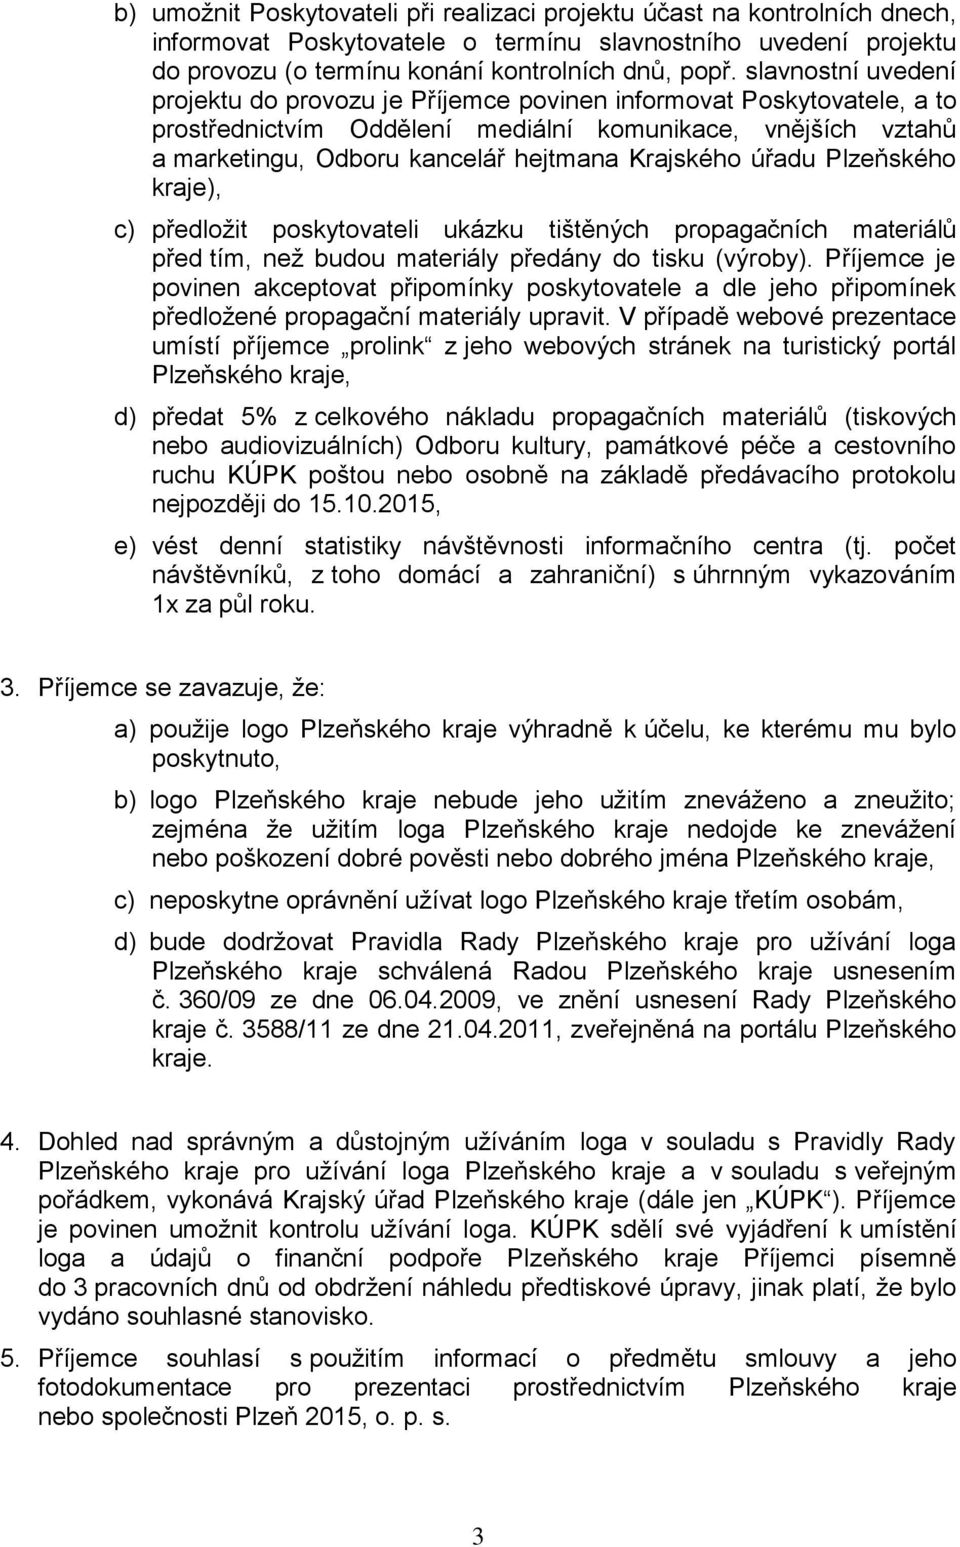 Krajského úřadu Plzeňského kraje), c) předložit poskytovateli ukázku tištěných propagačních materiálů před tím, než budou materiály předány do tisku (výroby).